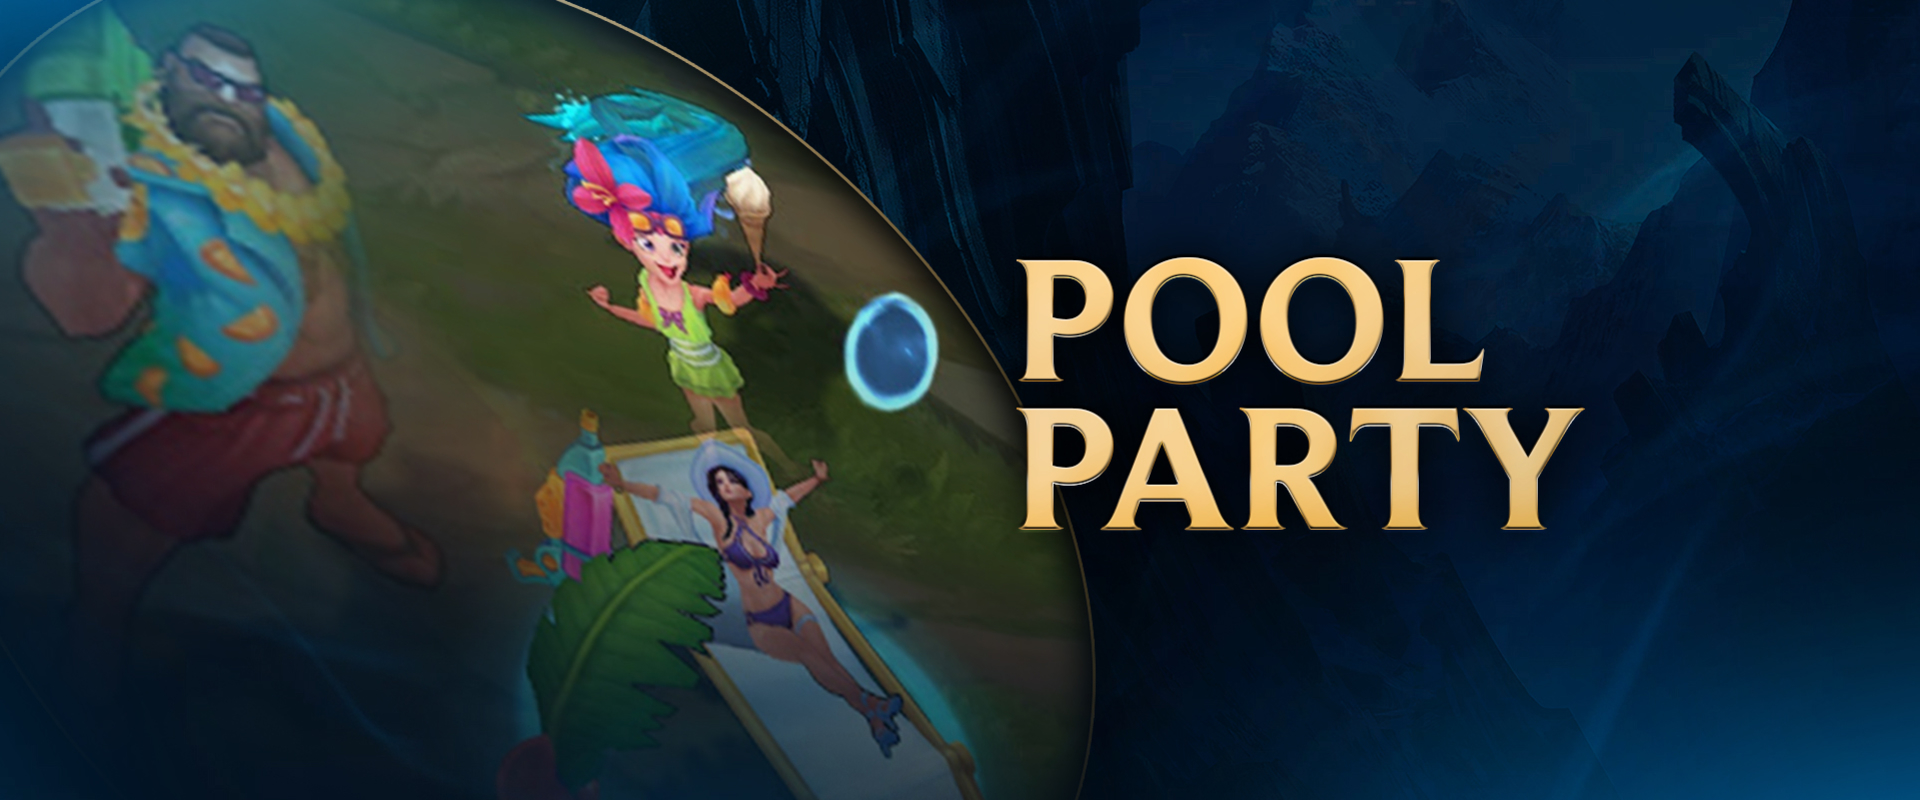 Újra itt a nyár a szurdokban, íme az új Pool Party skinek! - videó